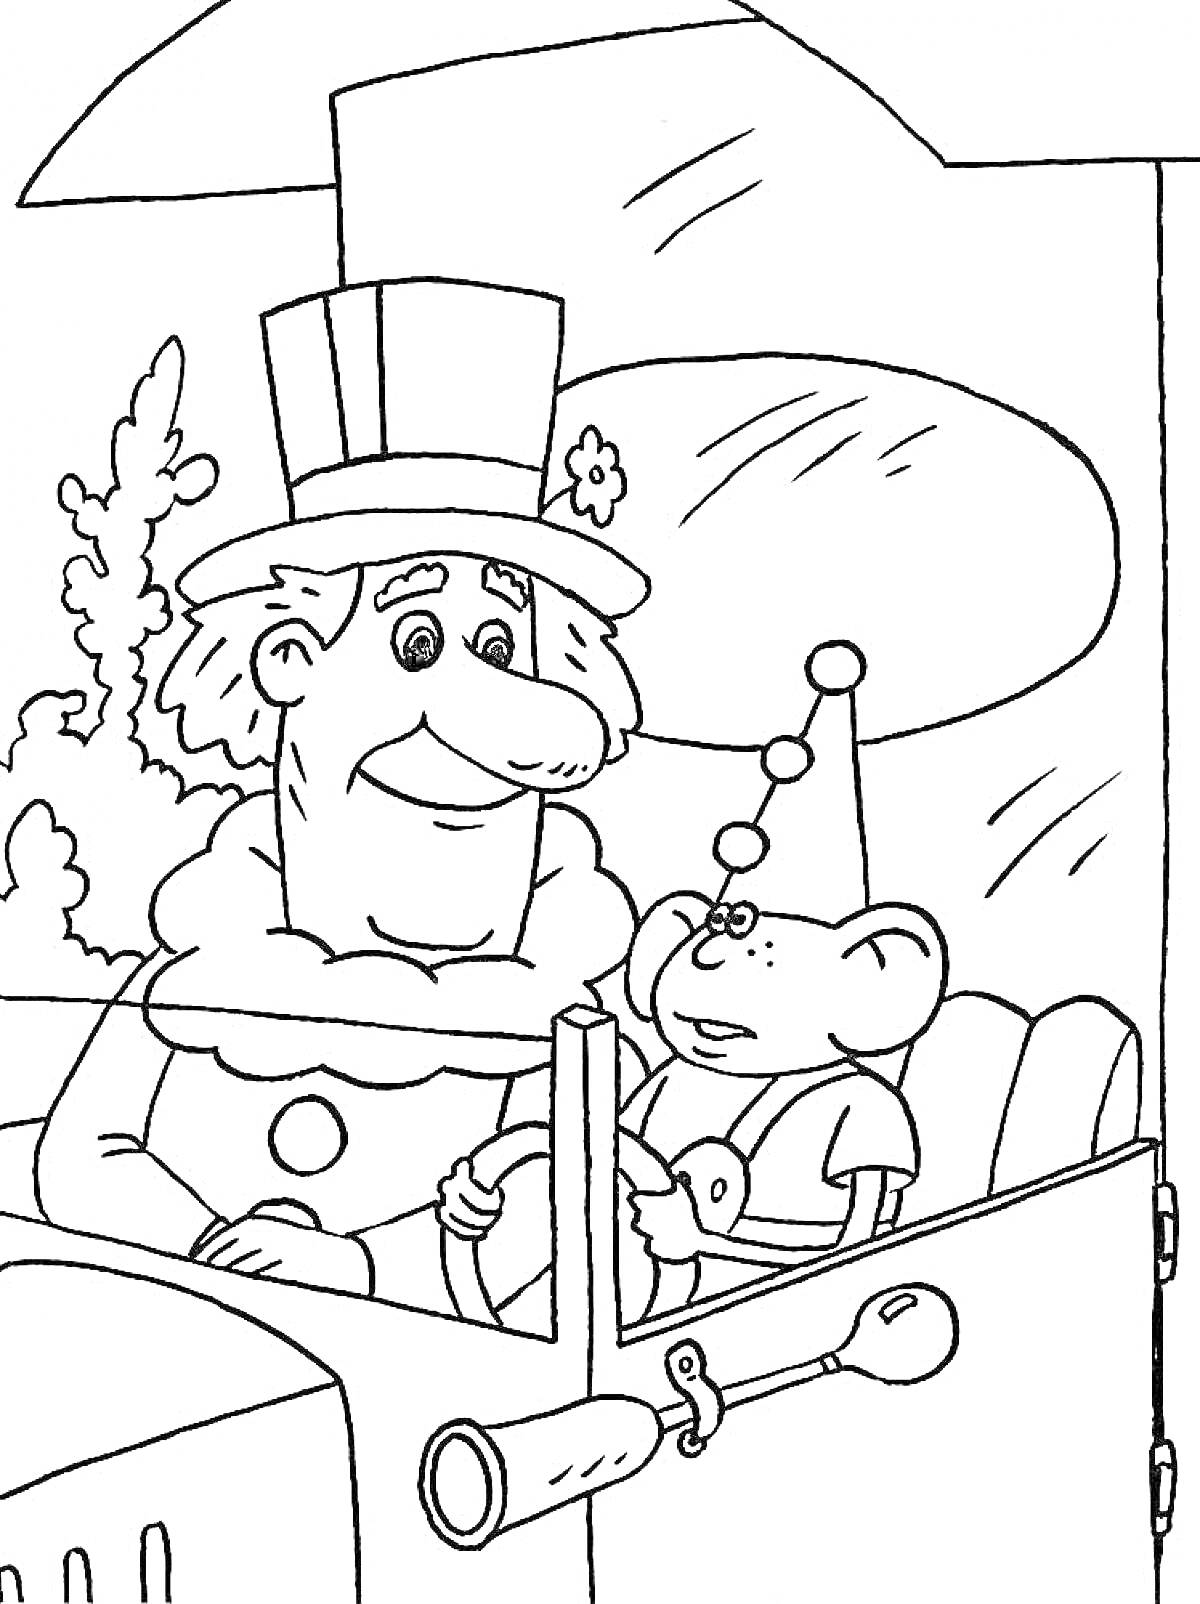 Раскраска Фунтик и мужчина в шляпе за рулем автомобиля